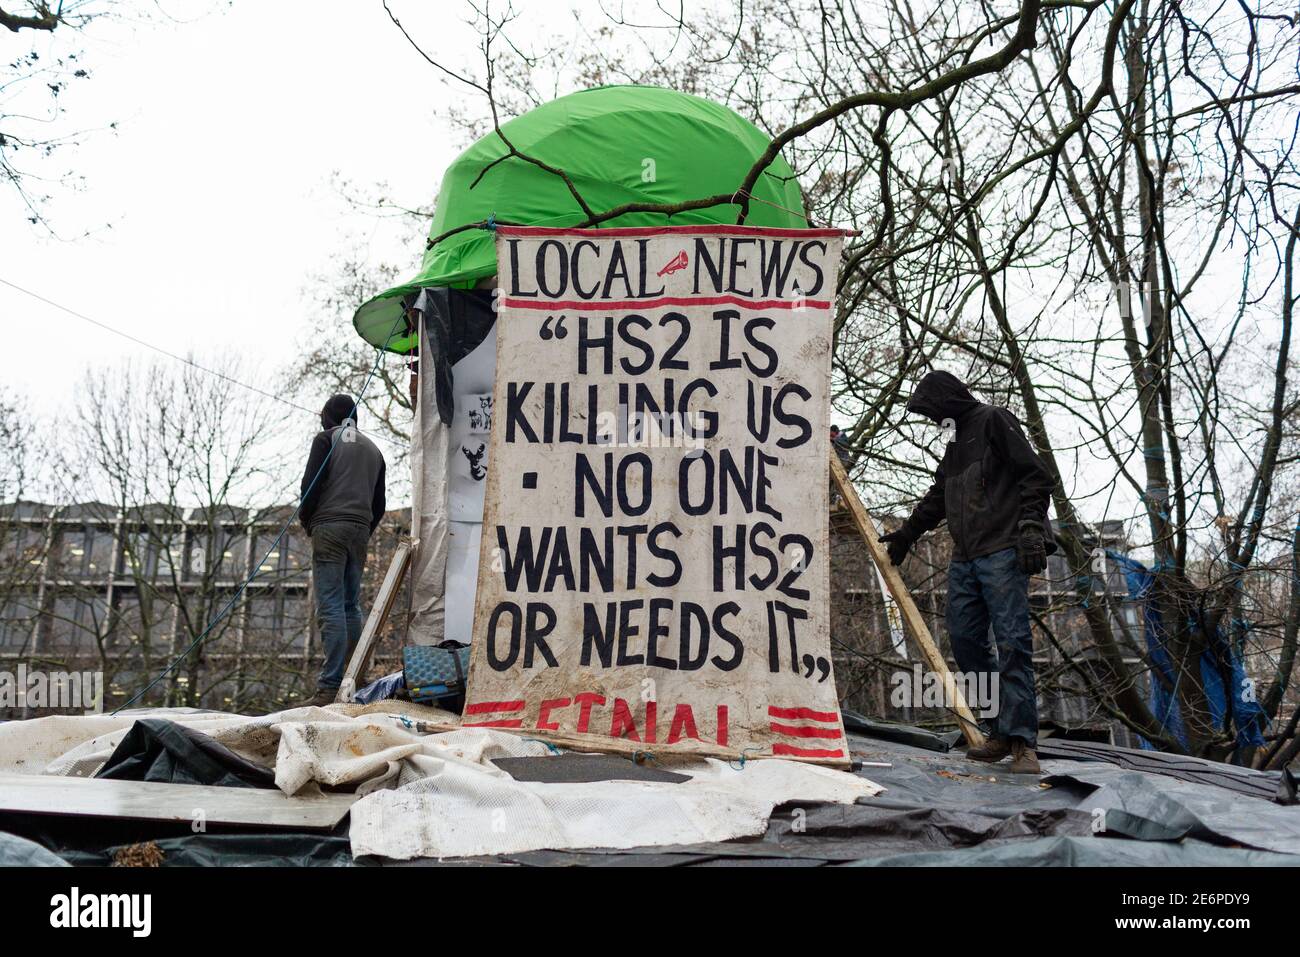 Desalojo de manifestantes de Stop HS2 del campamento en Euston Square Gardens, Londres, 27 de enero de 2021. Manifestantes en el techo de la choza en el campamento. Foto de stock